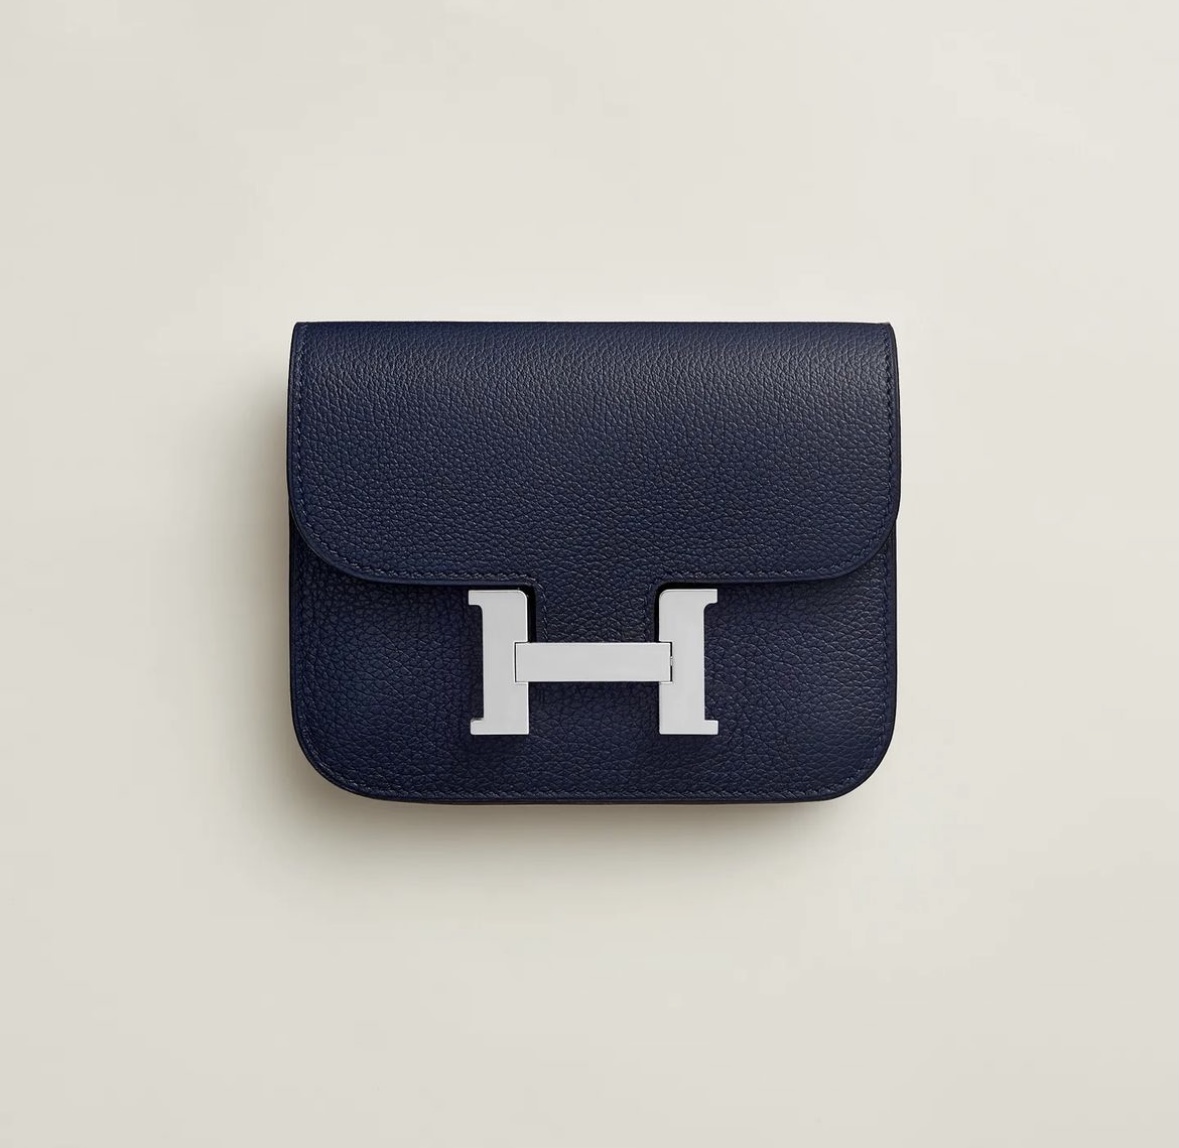 愛馬仕包包官方價格及圖片 Hermès Constance Slim wallet Bleu Nuit Evercolor